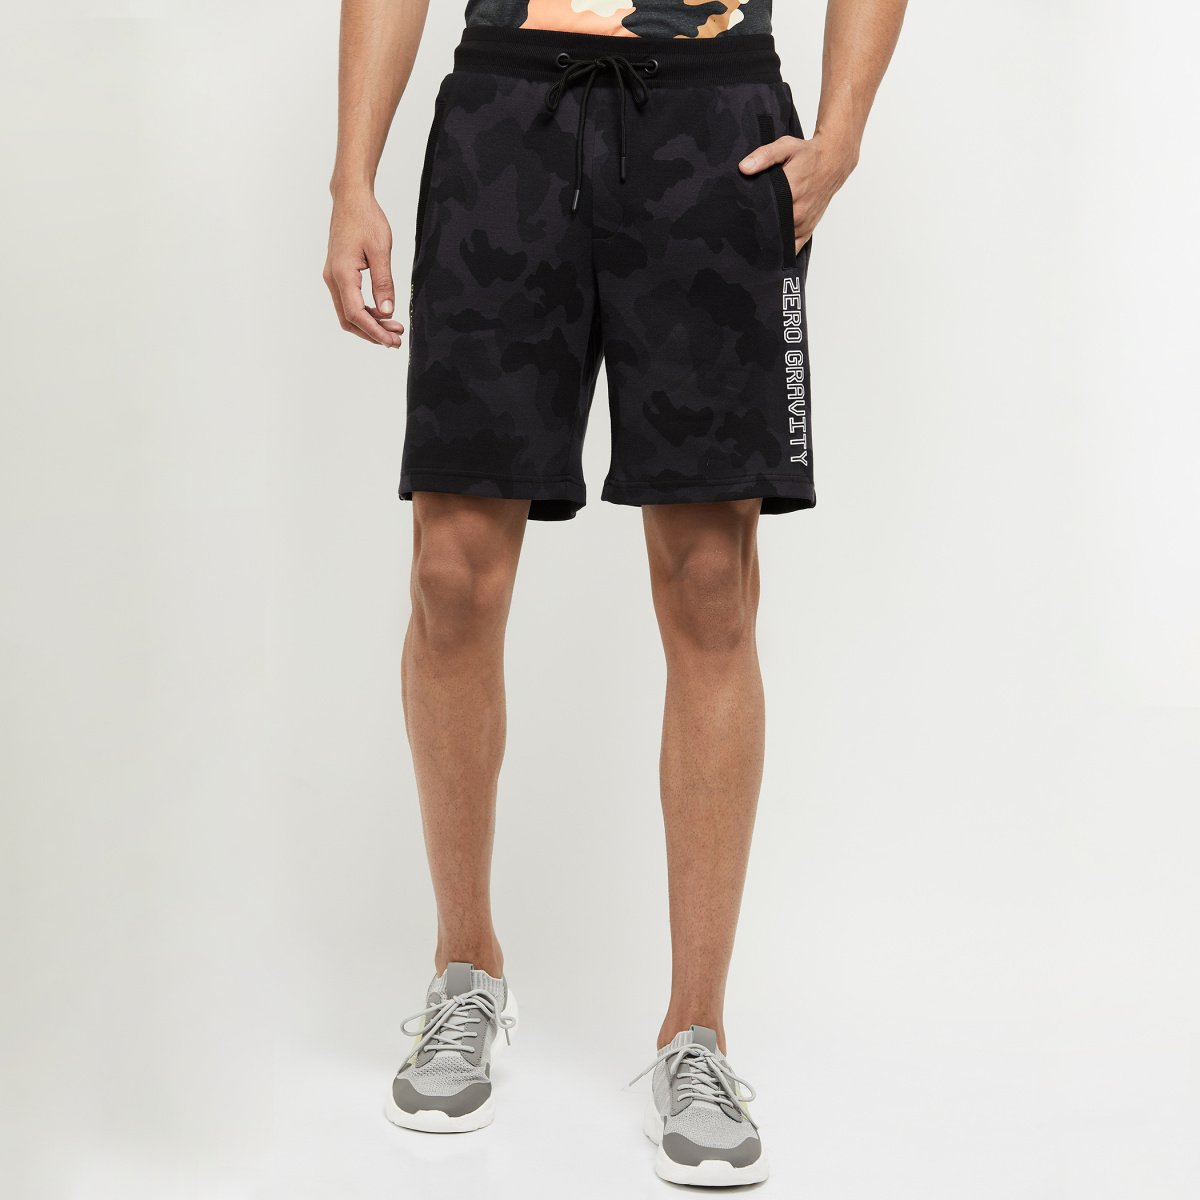 MAX Printed Sports Shorts